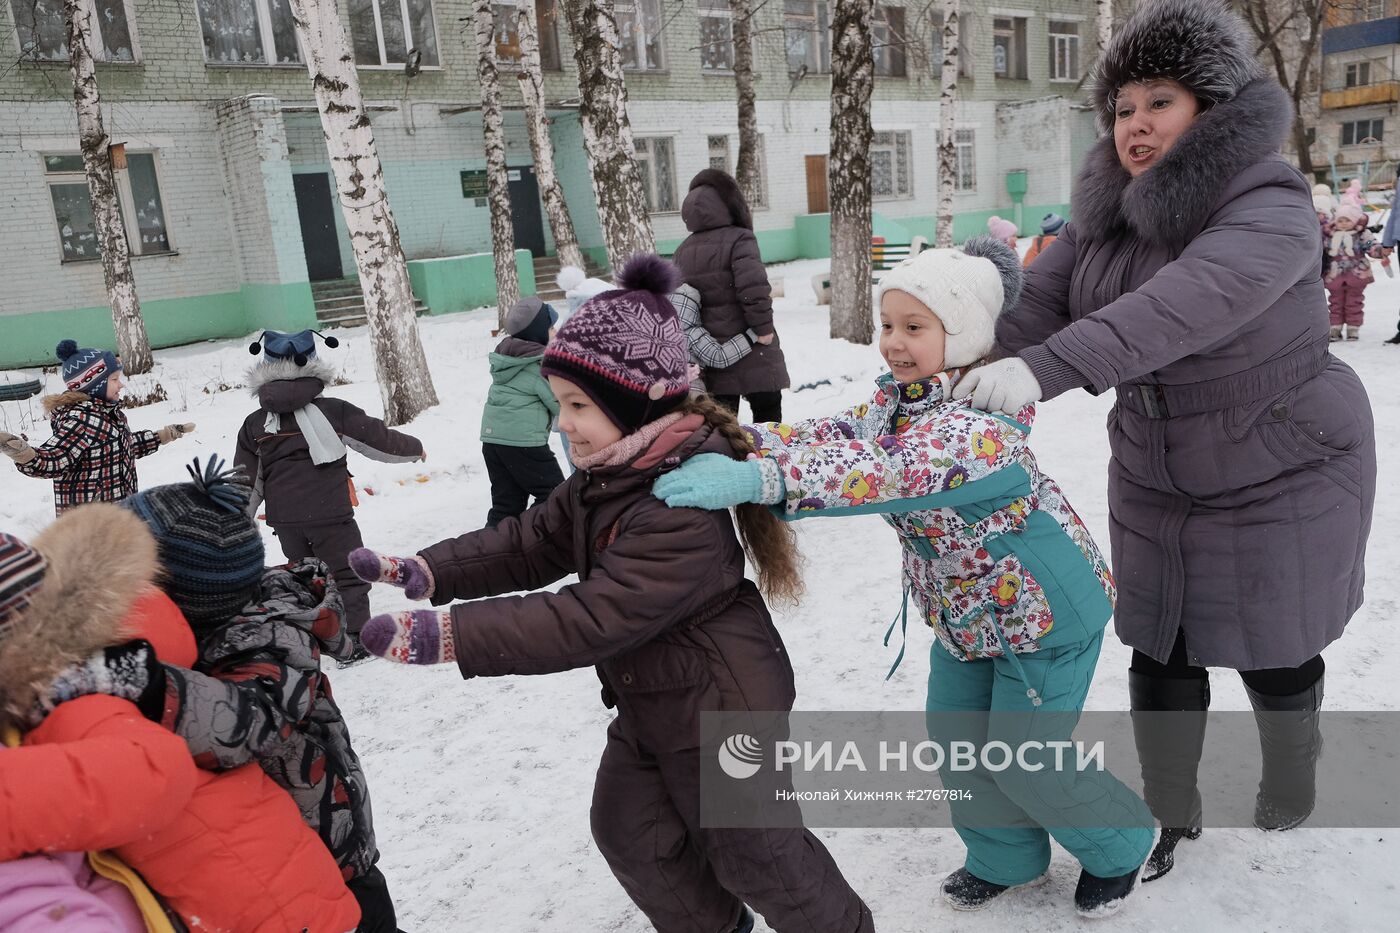 Самарский детский сад стал лучшим в России по итогам 2015 года